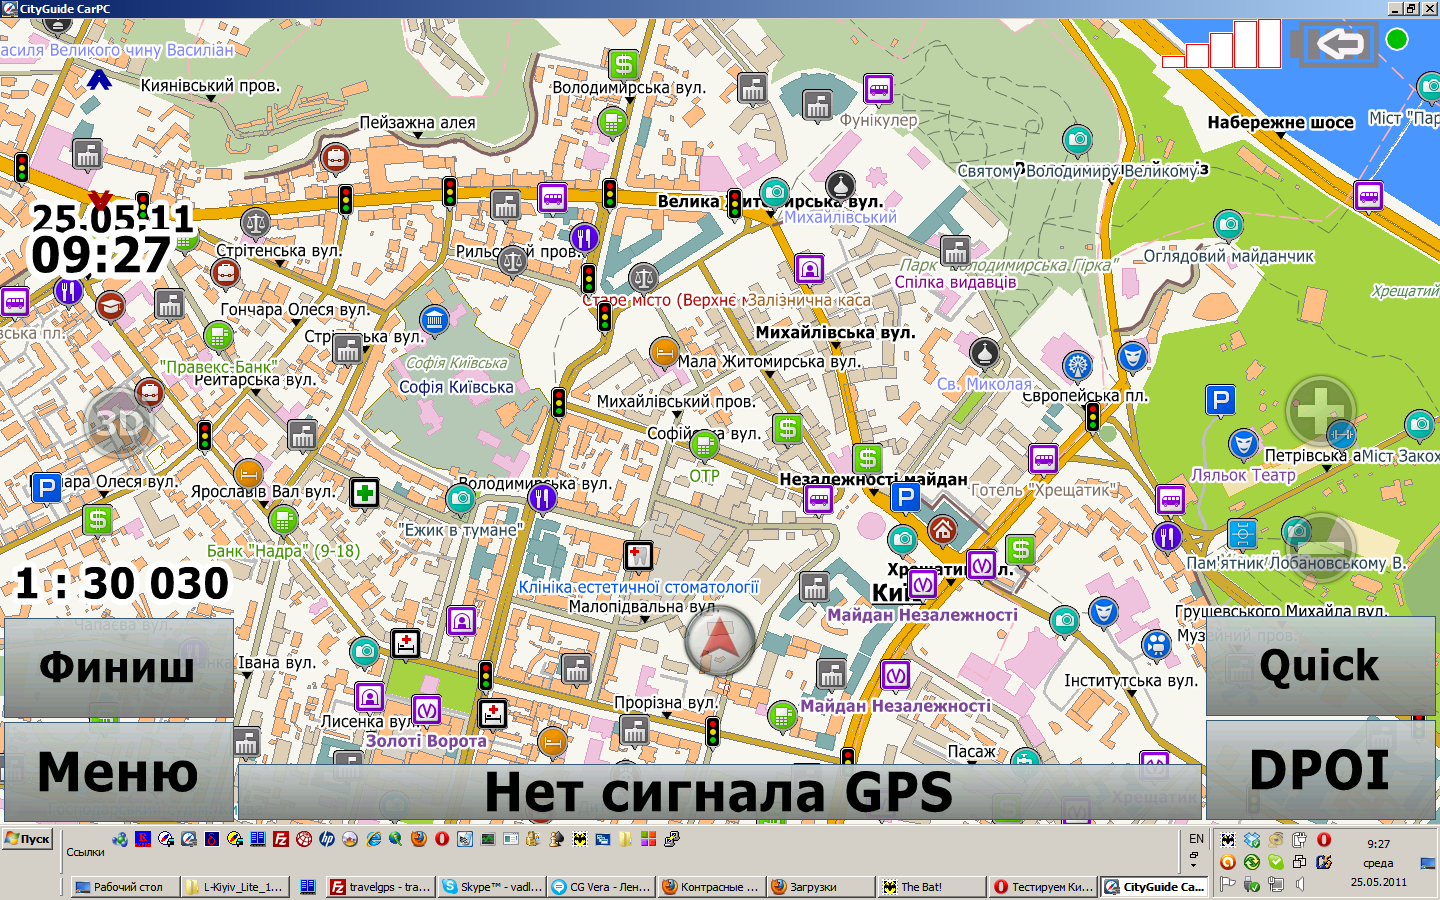 Re: Карты Украины для СитиГид от travelgps.com.ua.